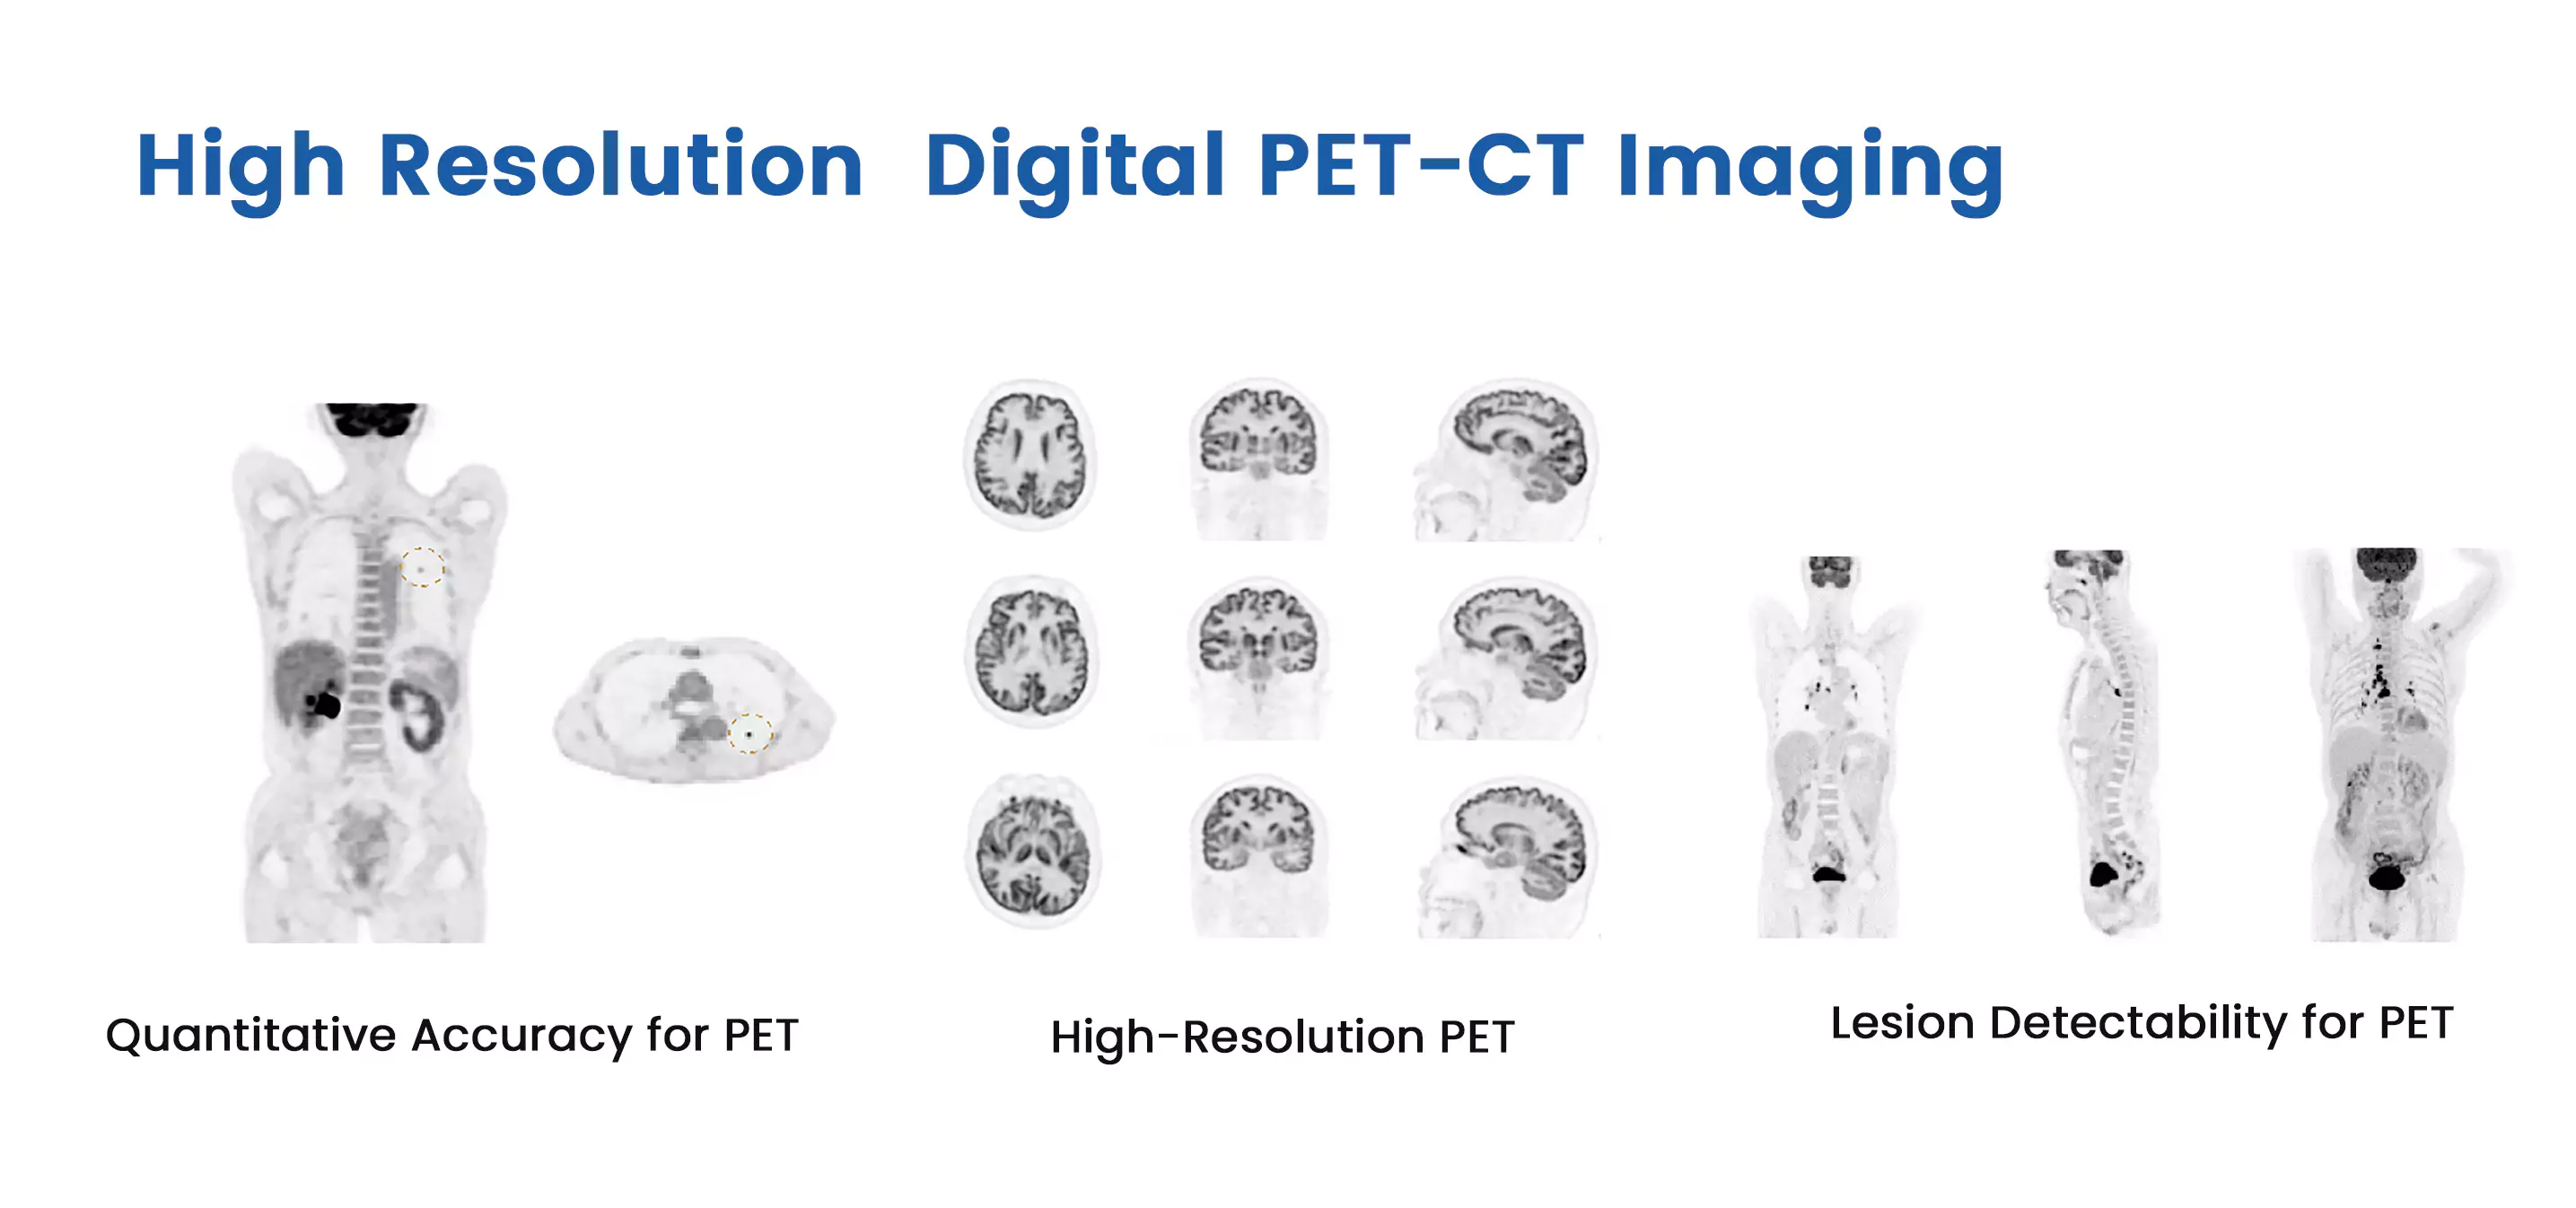 Digital PET CT Imaging